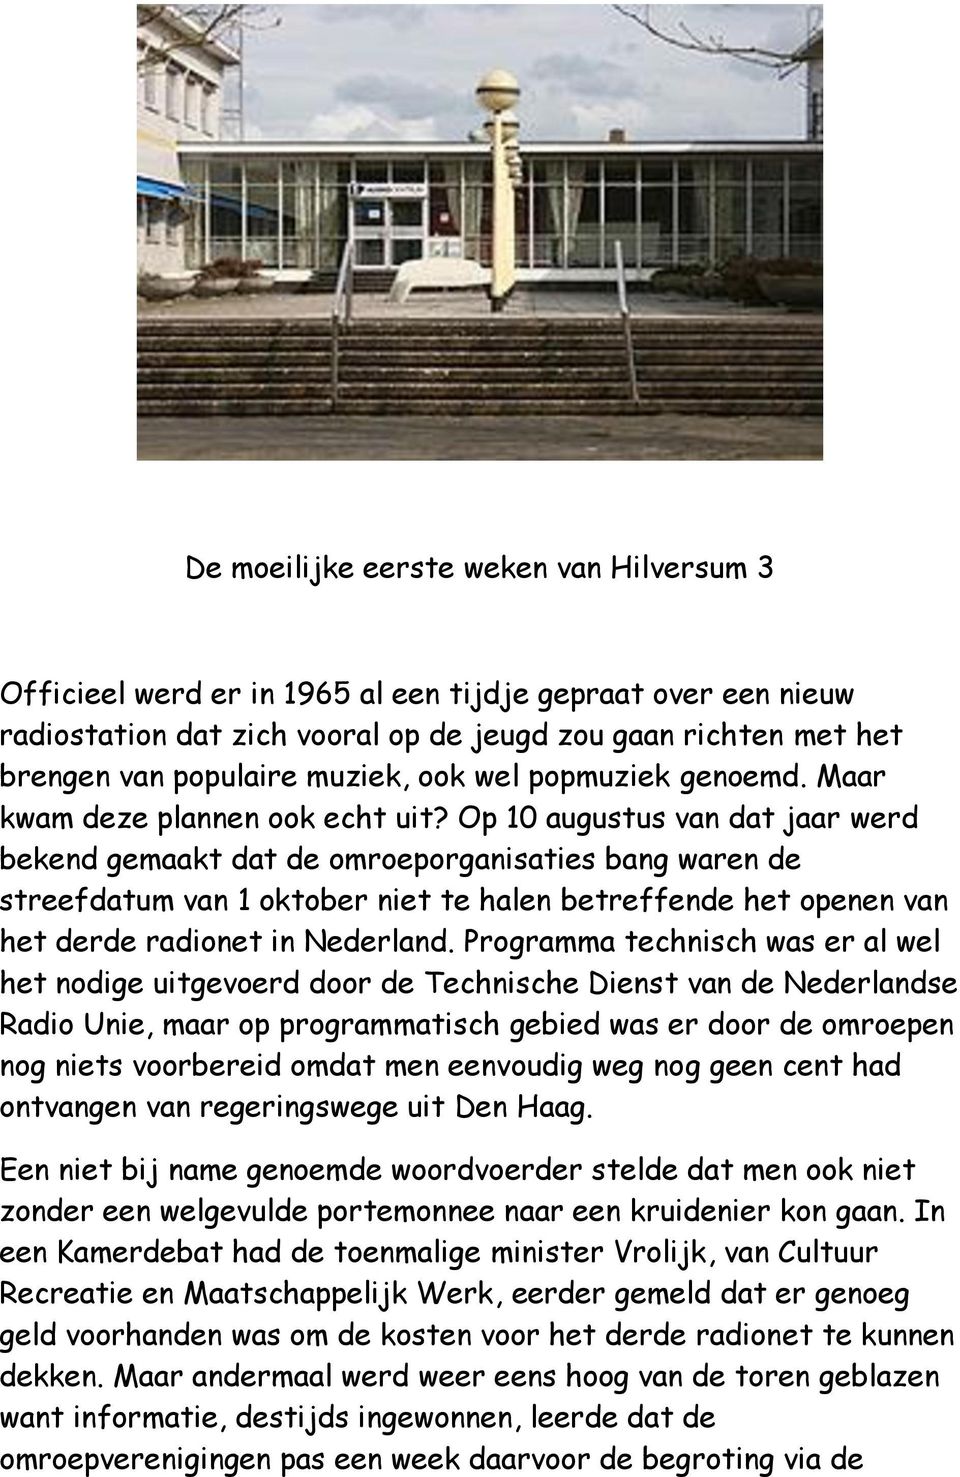 Op 10 augustus van dat jaar werd bekend gemaakt dat de omroeporganisaties bang waren de streefdatum van 1 oktober niet te halen betreffende het openen van het derde radionet in Nederland.